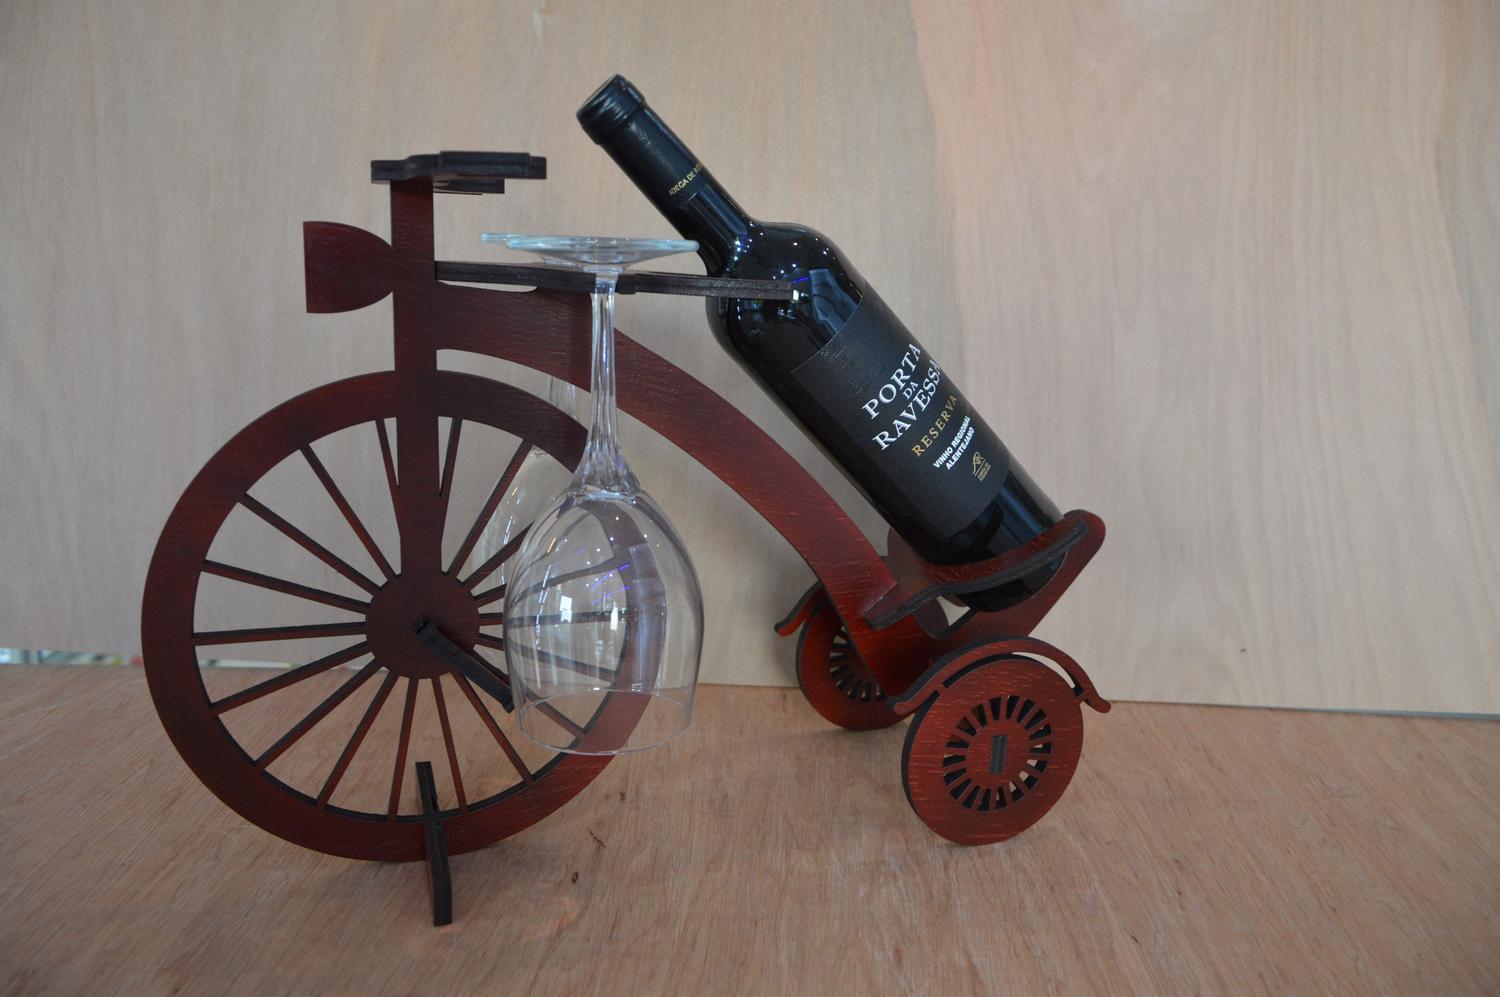 Plantilla de corte por láser para soporte de botella de vino de bicicleta de madera decorativa